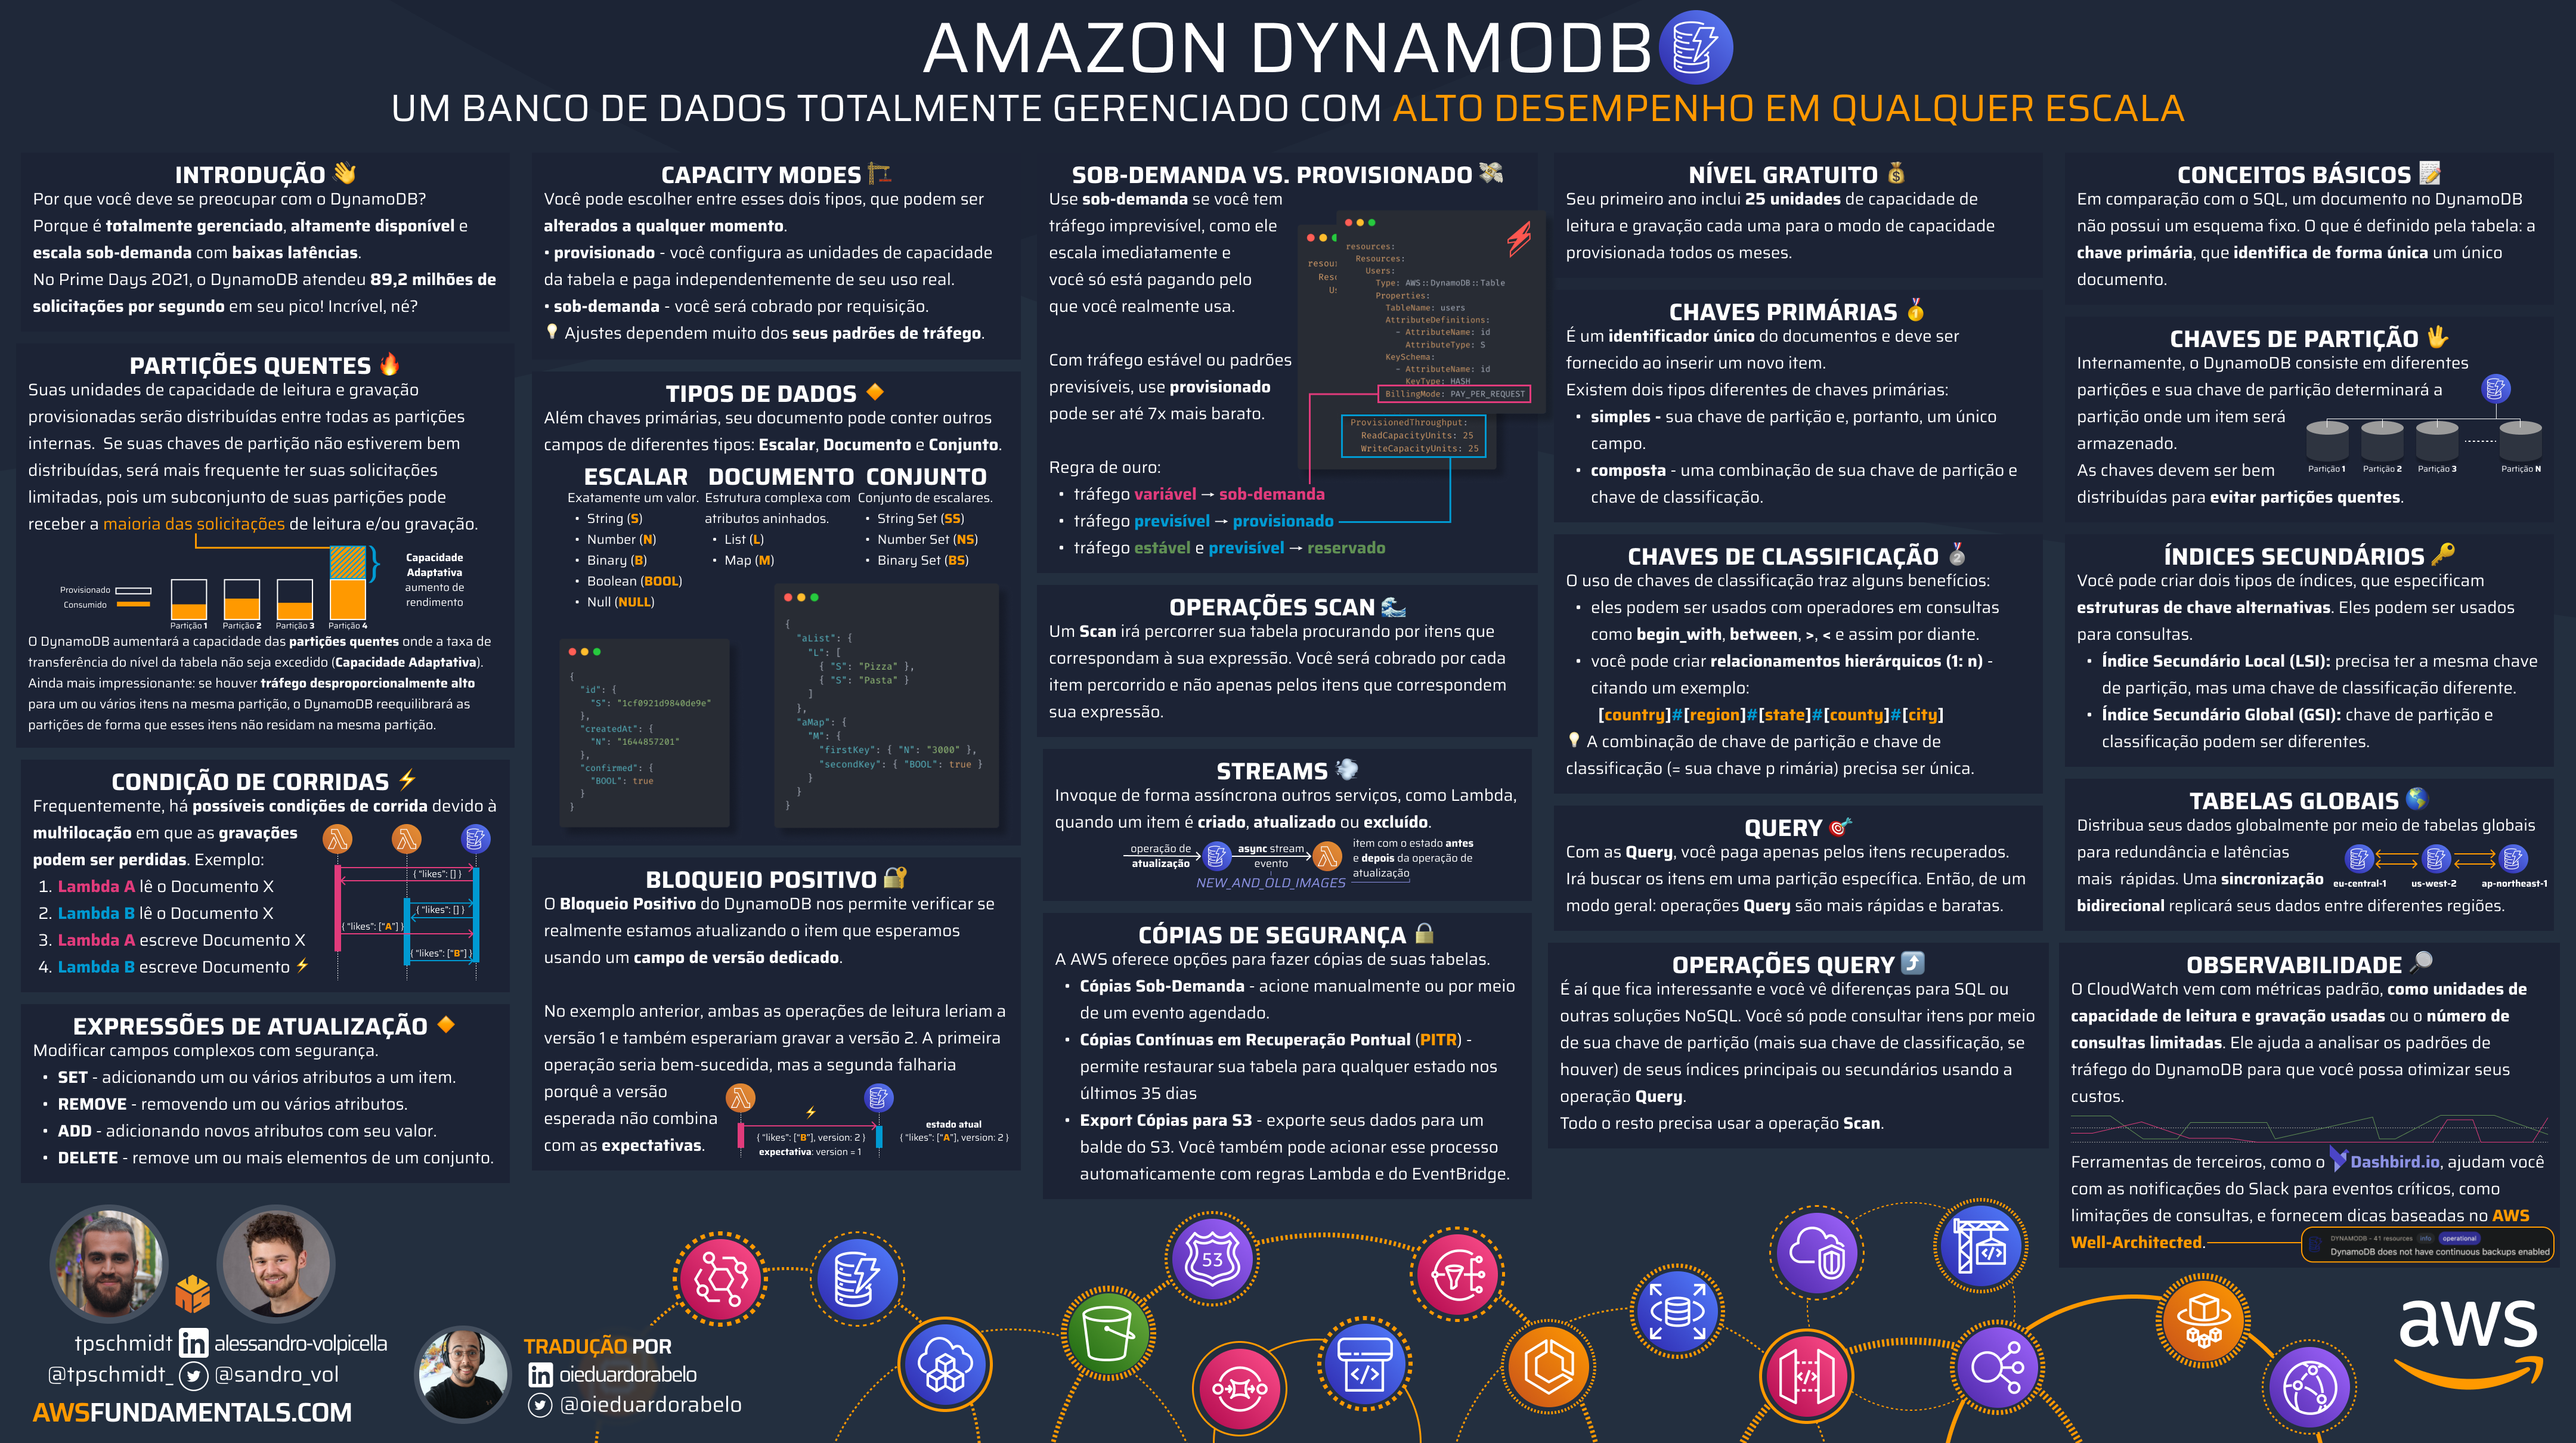 Amazon DynamoDB Infographic - Portugese